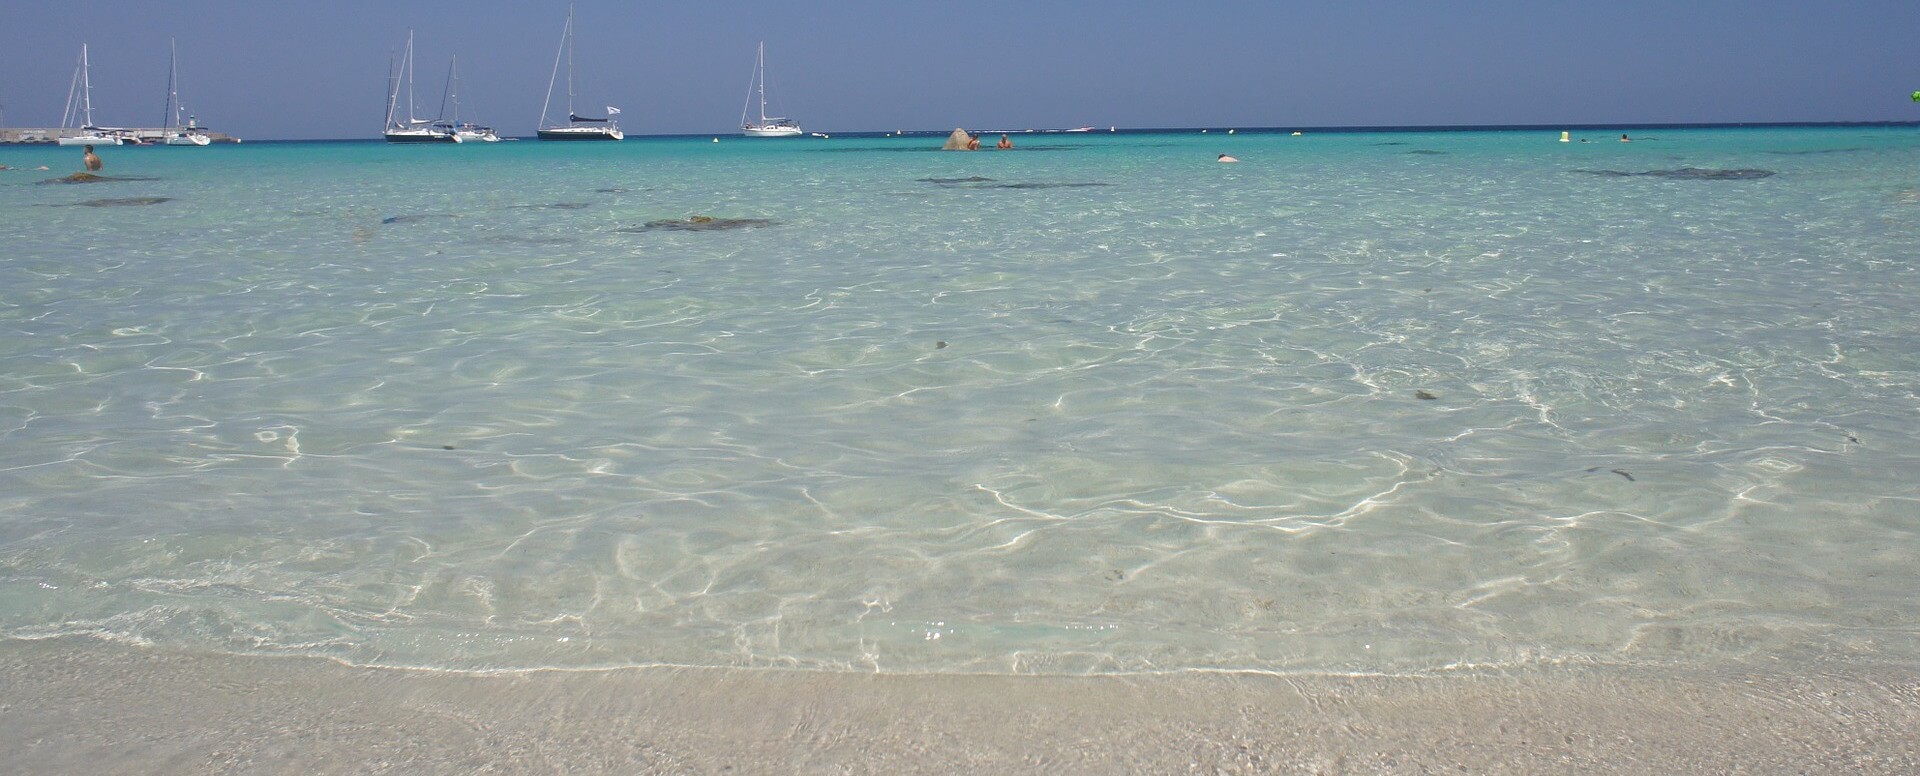 4. S’accorder un merveilleux moment de farniente sur une plage de la baie de Rondinara - Corse